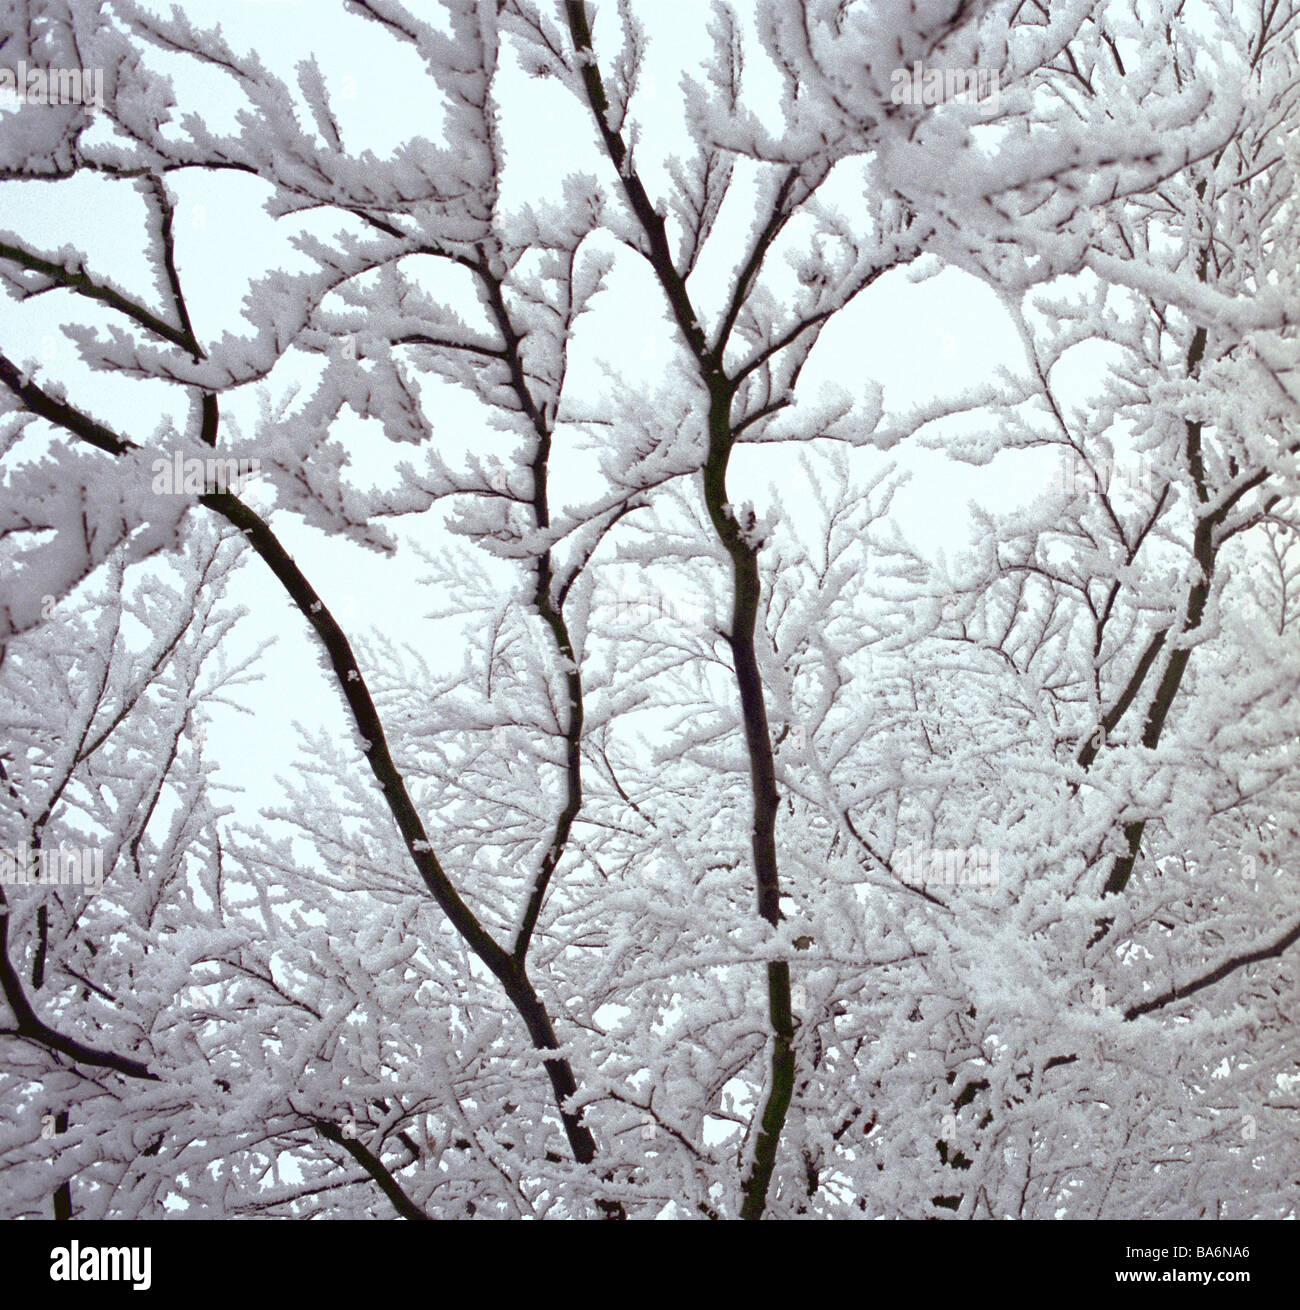 Bäume Sträucher Schnee Detail Serie Pflanzen bekommen im verschneiten ...